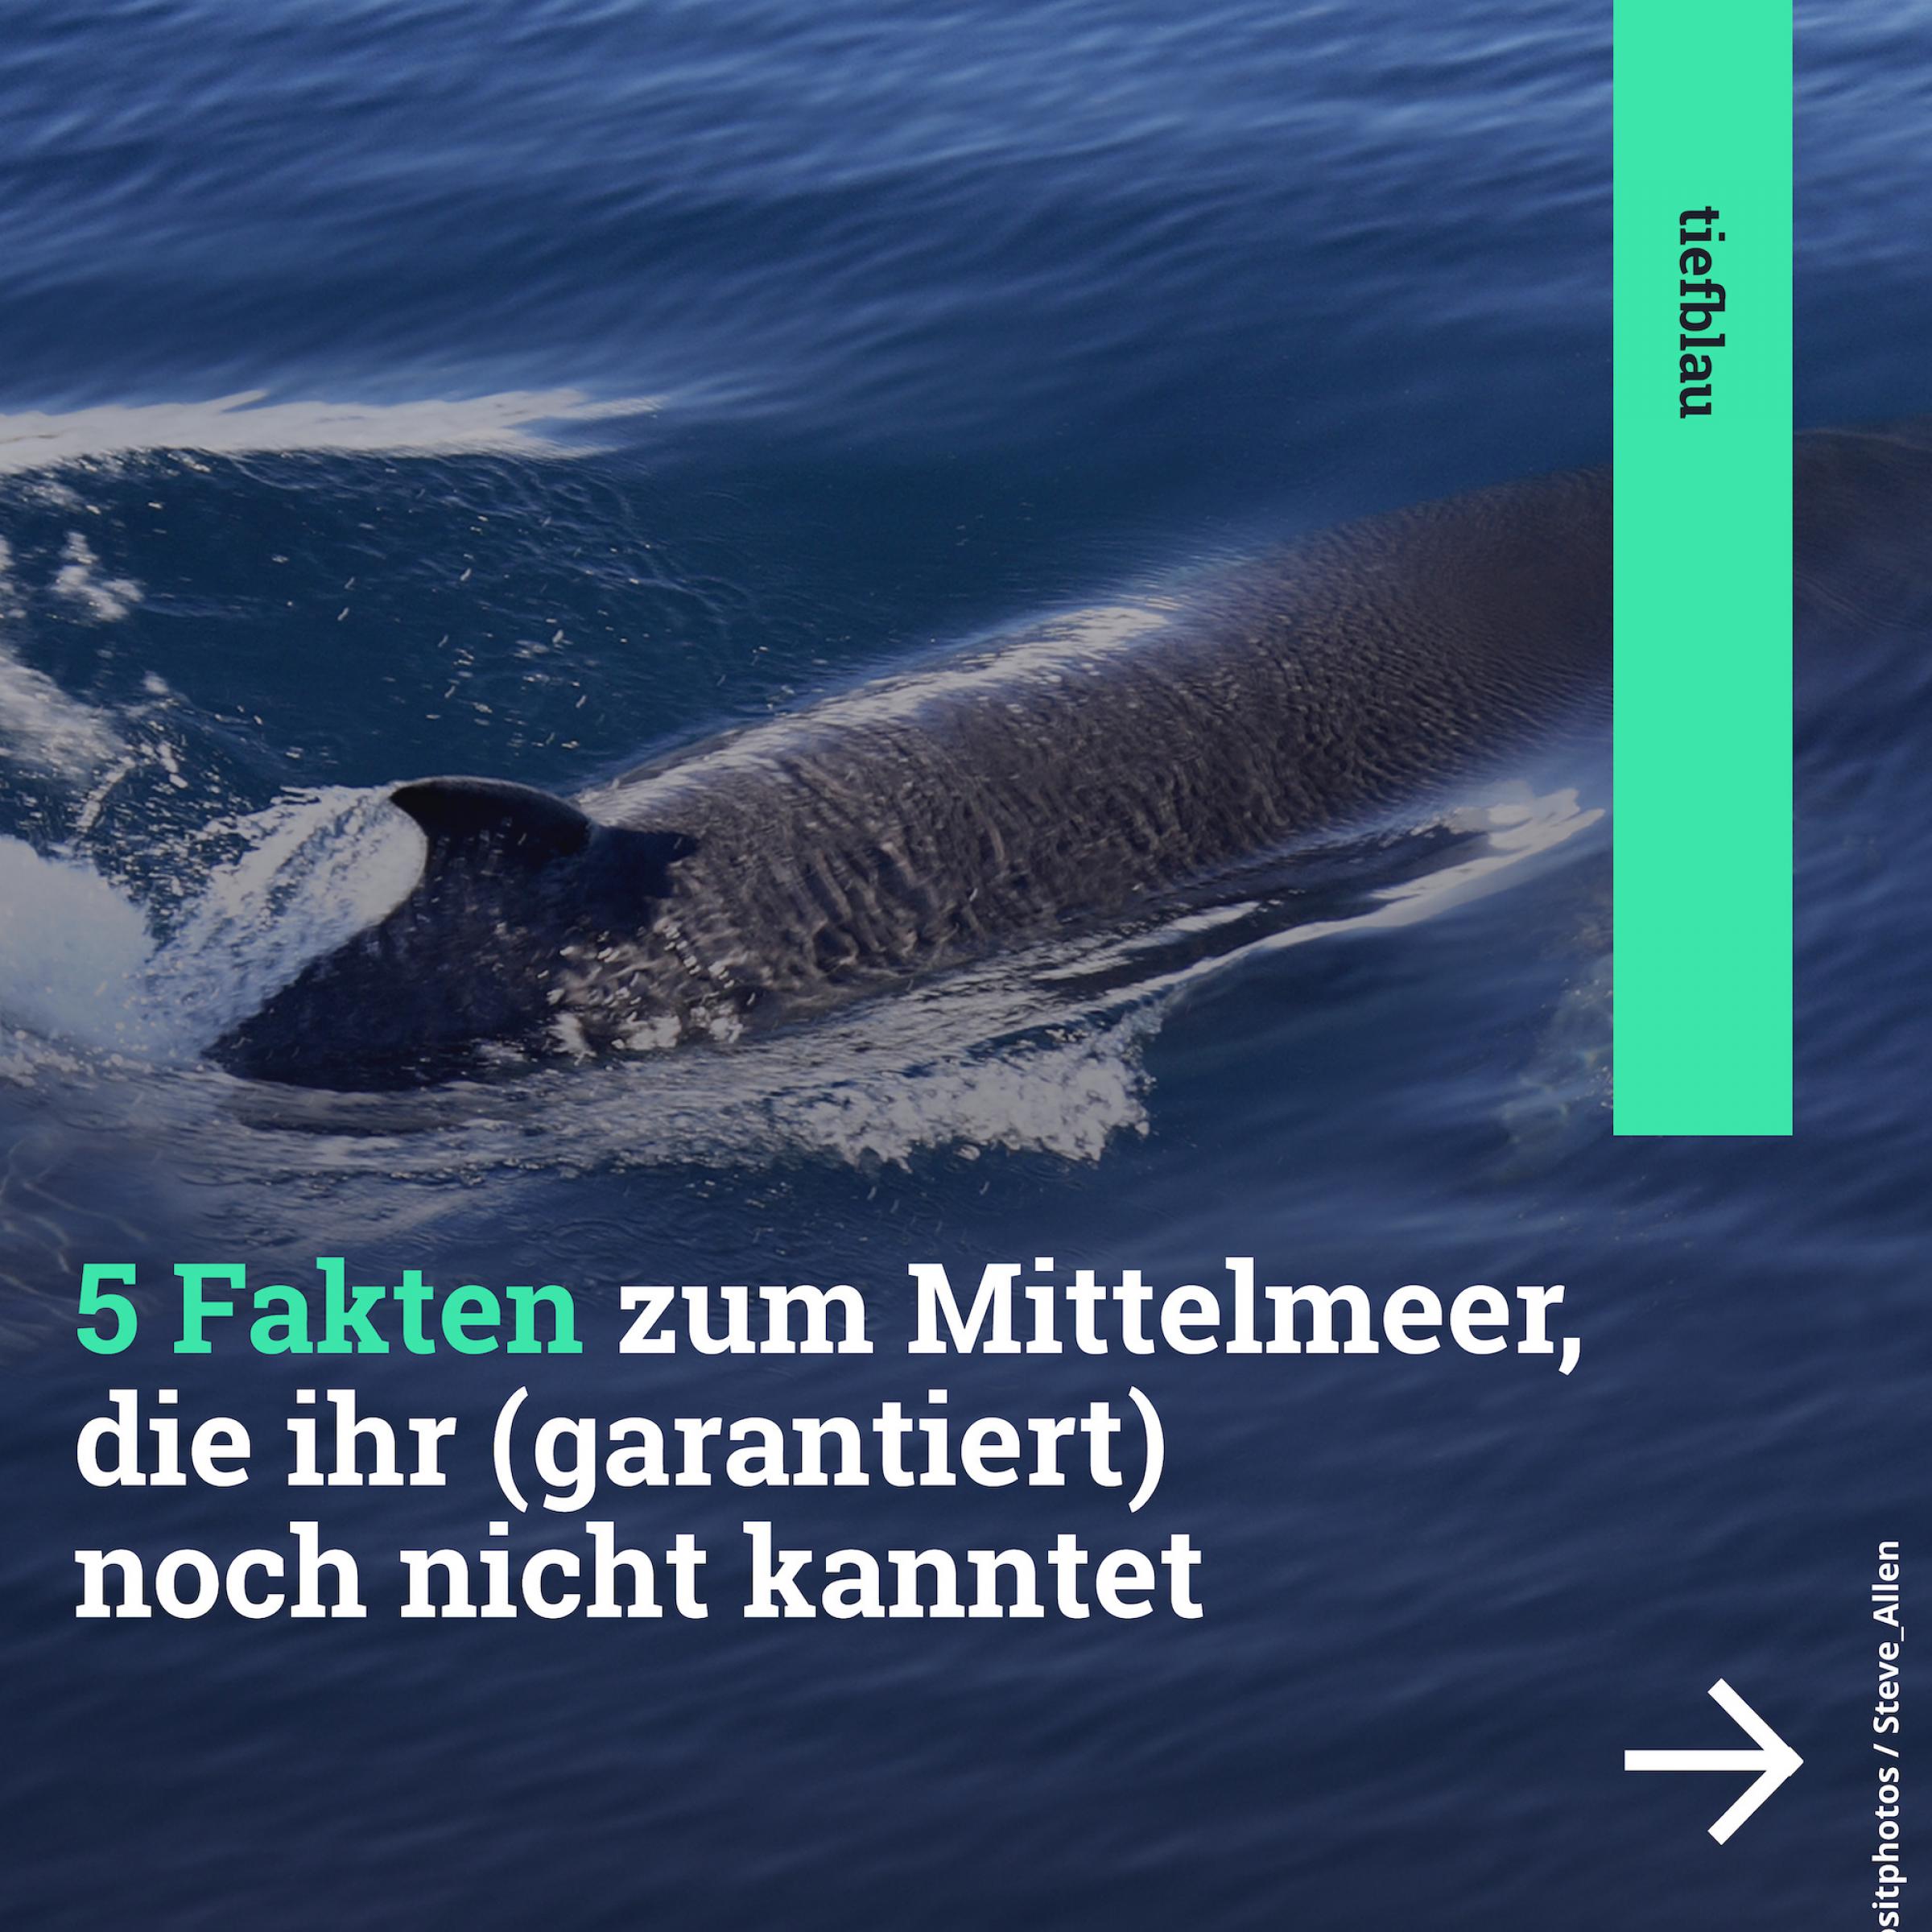 Eine Kachel mit Walen von oben im weiten Meer, darauf der Text: 5 Fakten, die ihr (garantiert) noch nicht kanntet.